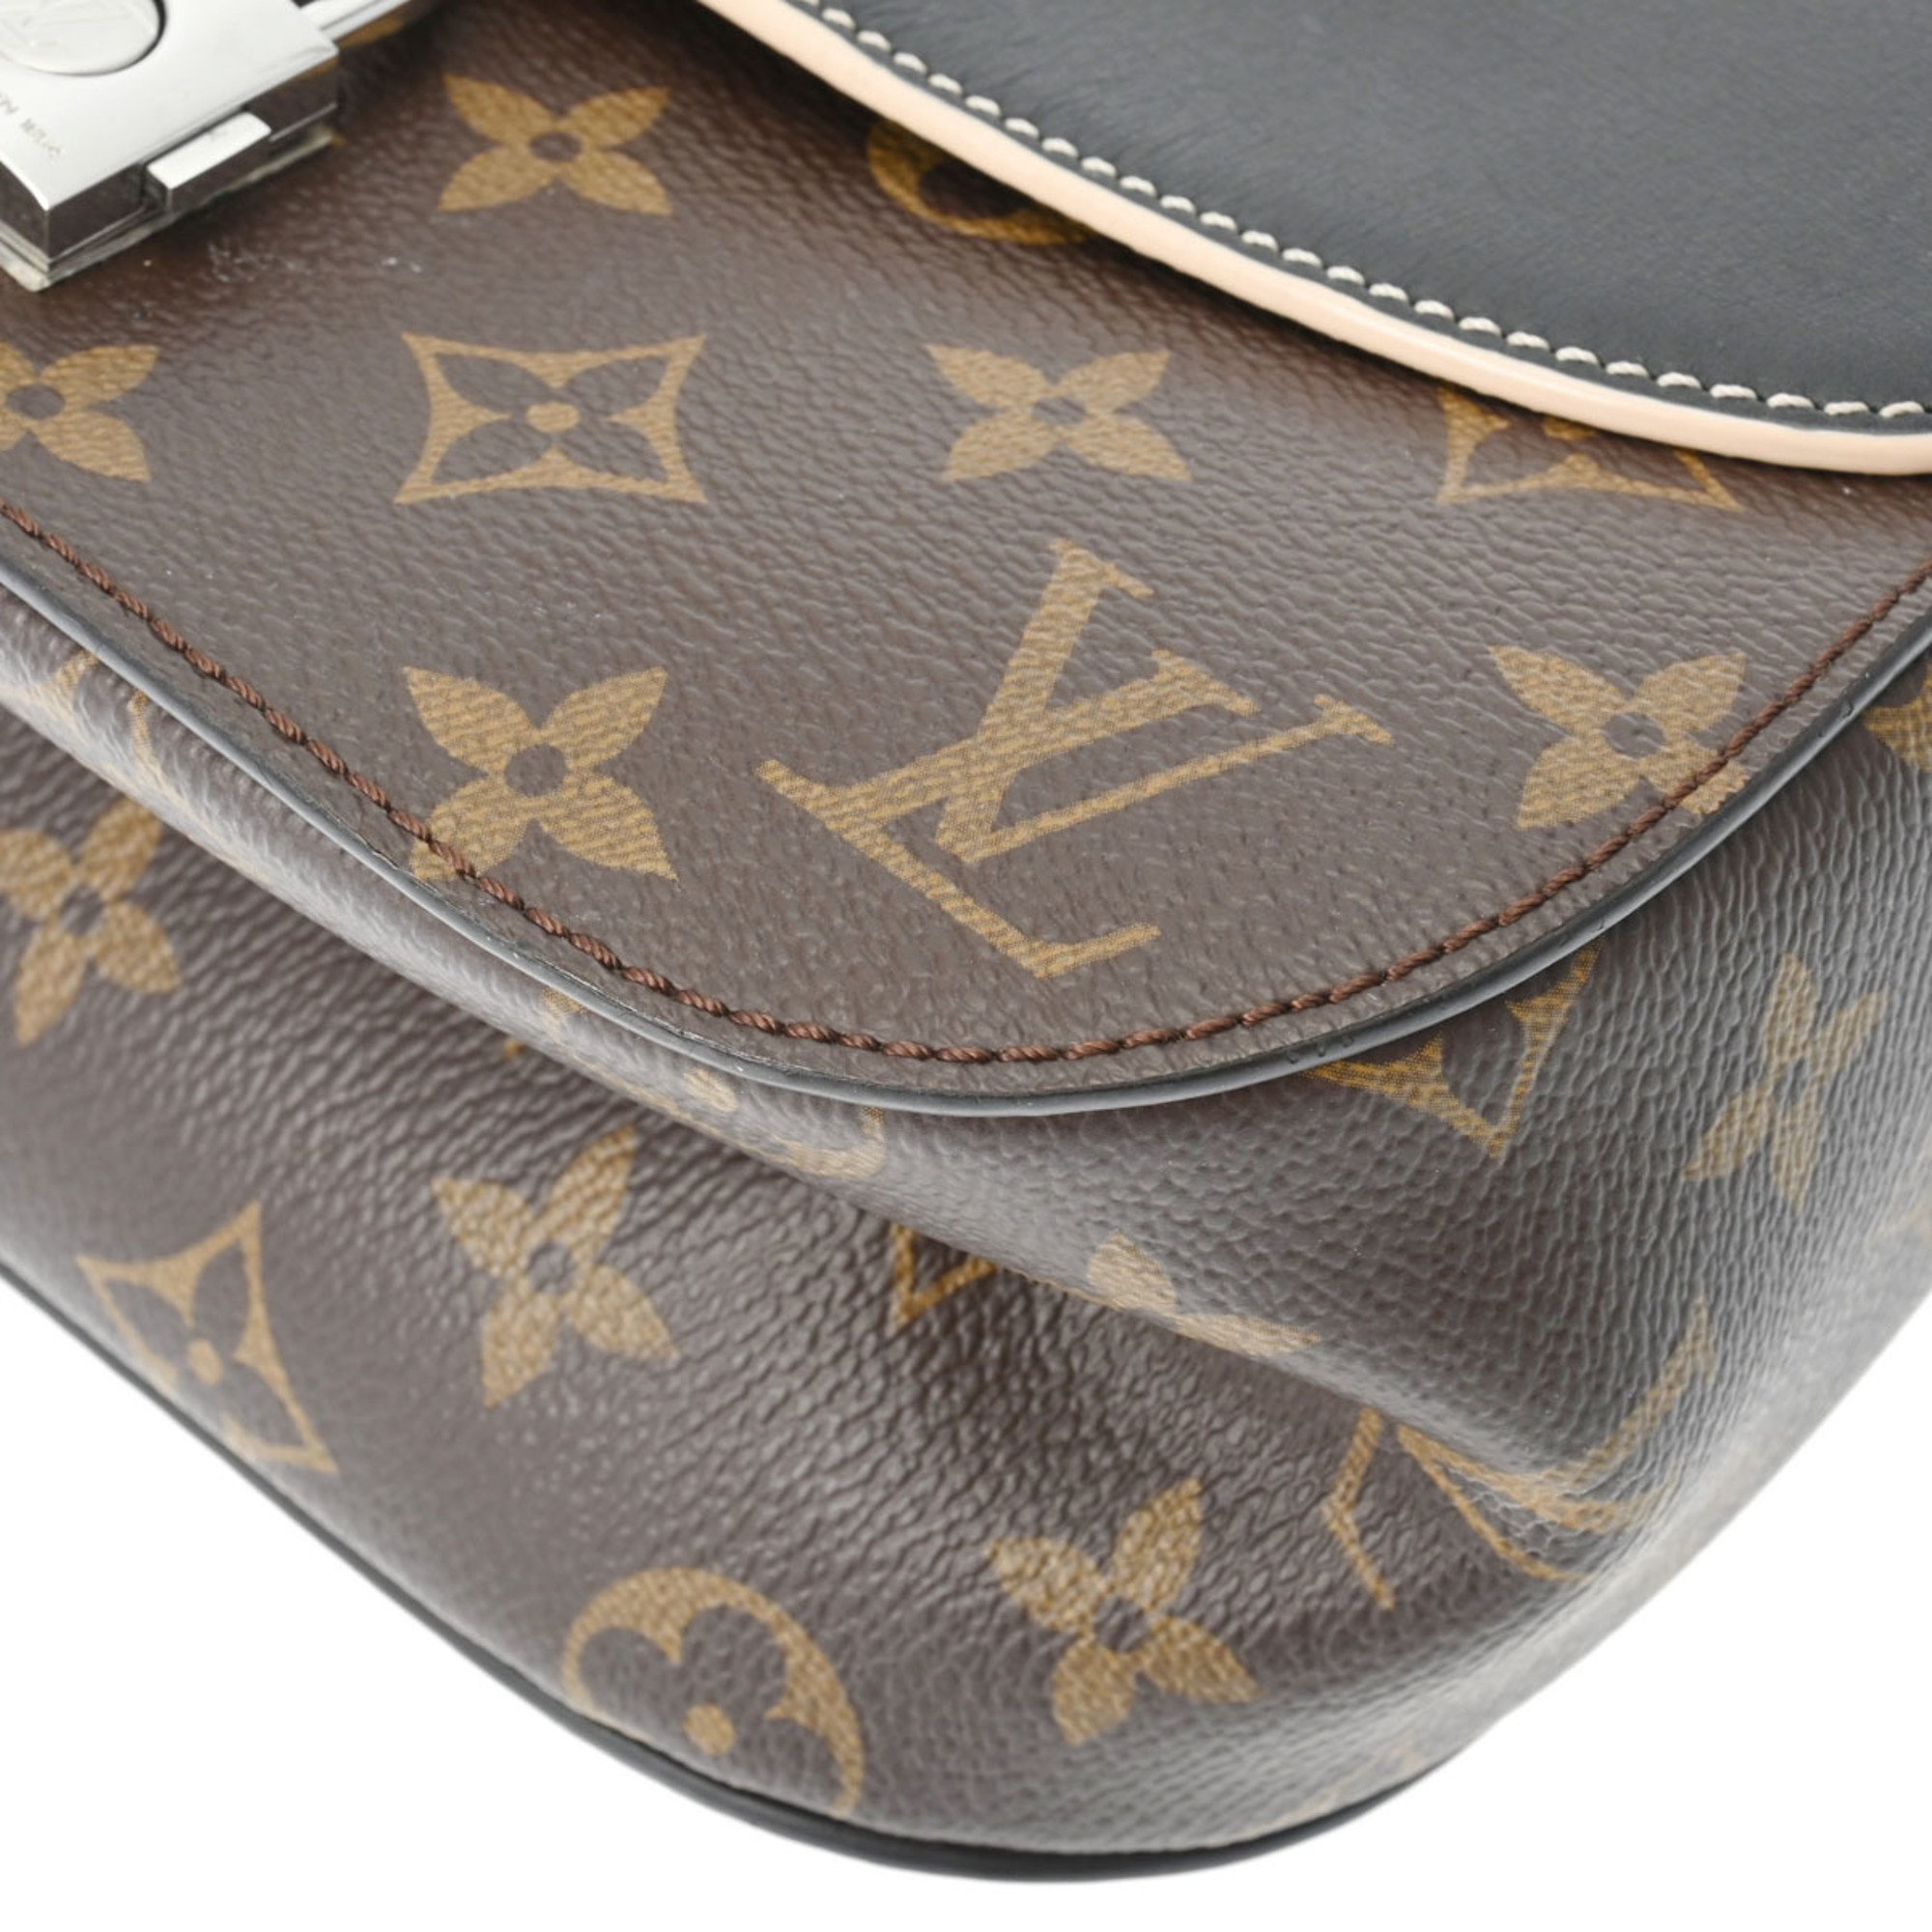 LOUIS VUITTON Louis Vuitton Monogram Chain It PM Noir M44115 Women's Canvas Handbag